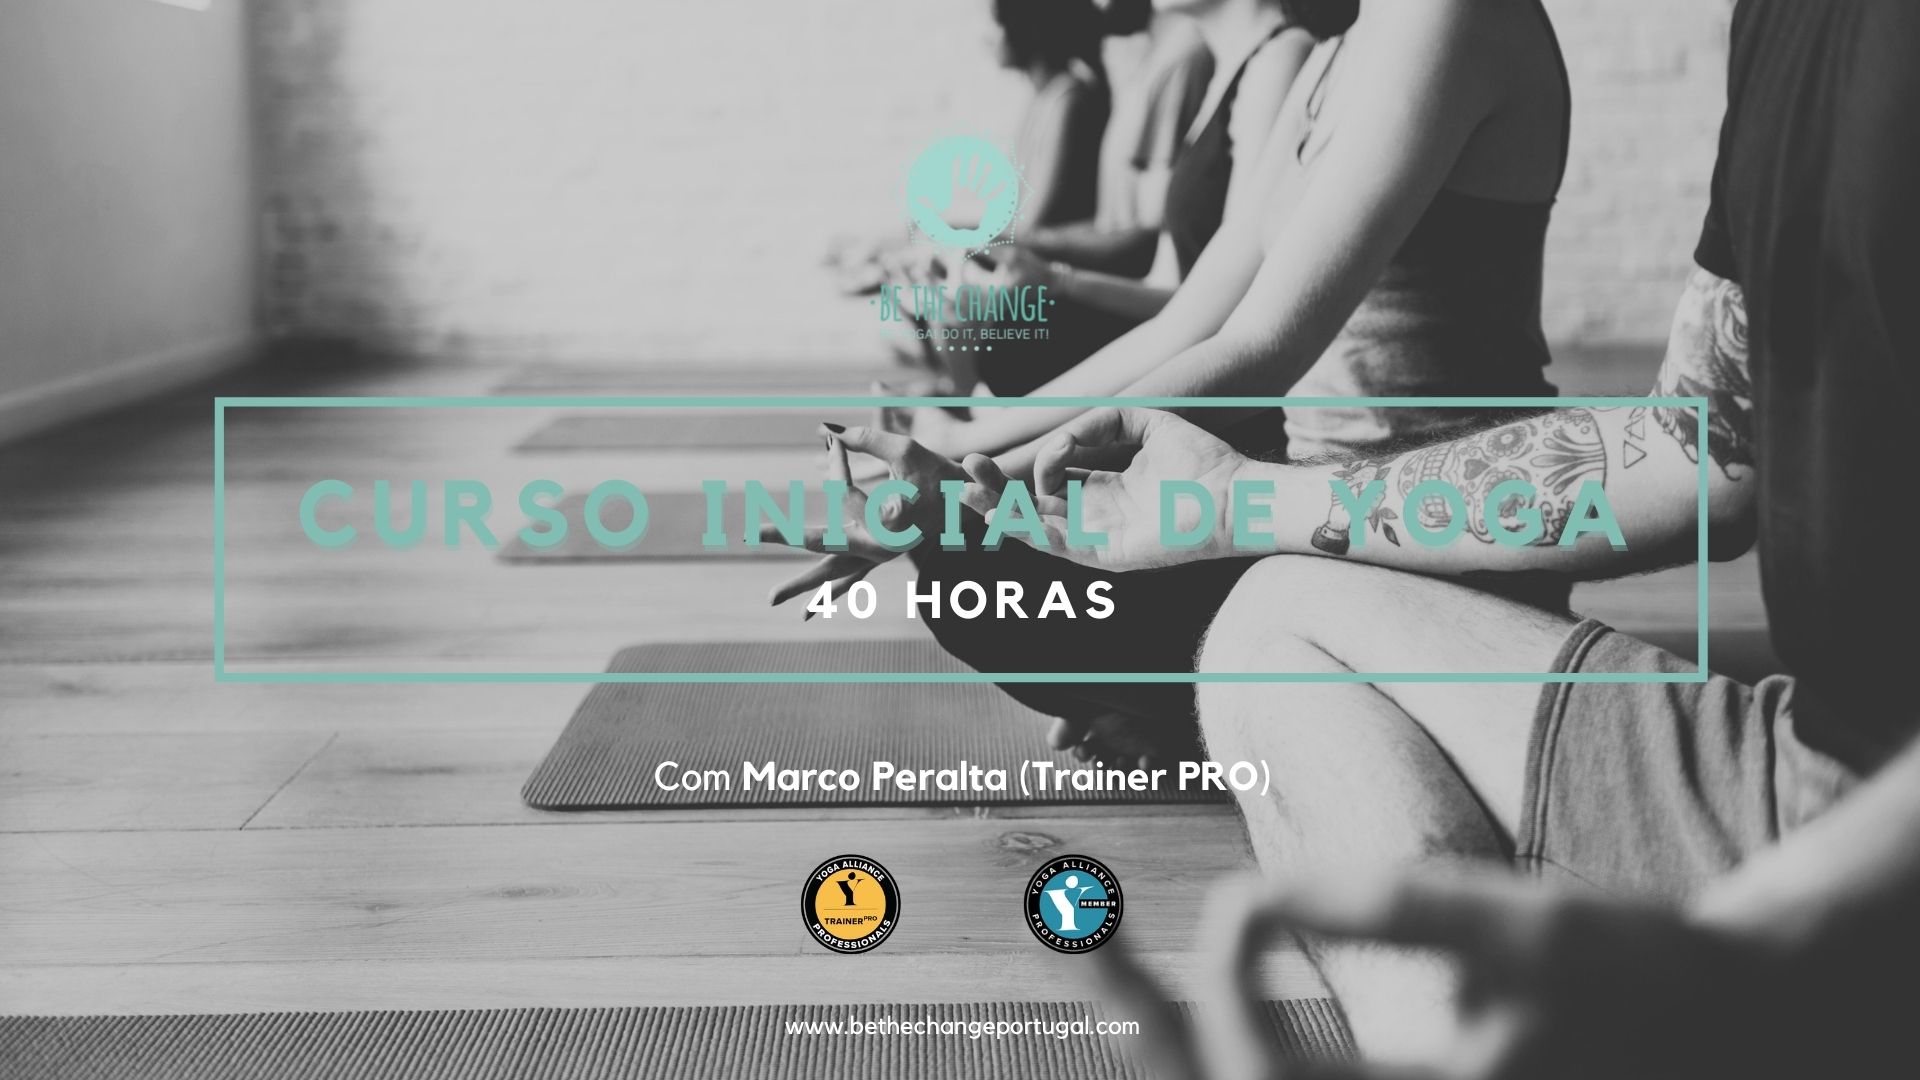 Curso de Yoga: formação de professores com Marco Peralta